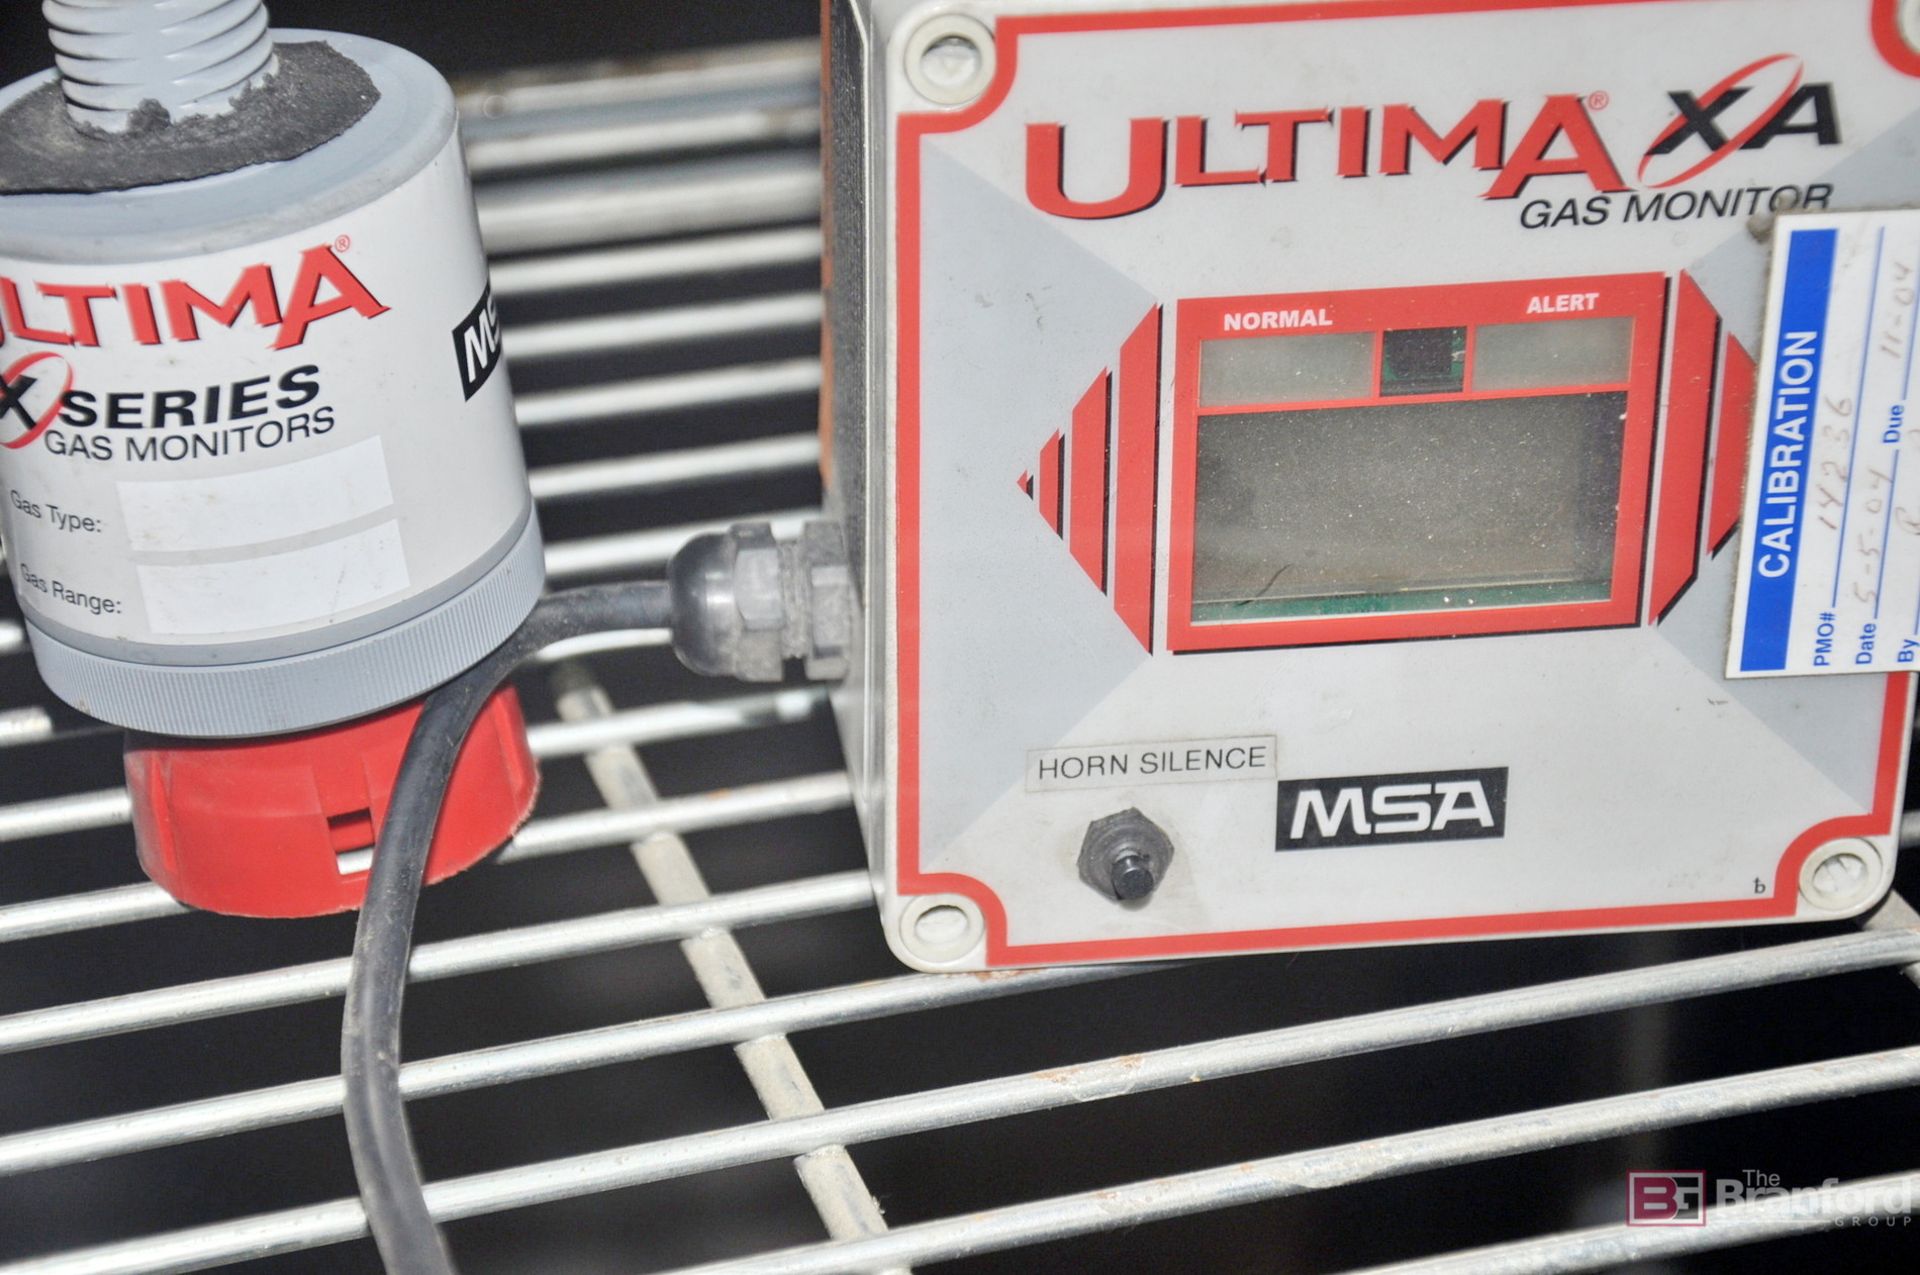 MSA Ultima XA gas monitor - Image 3 of 3